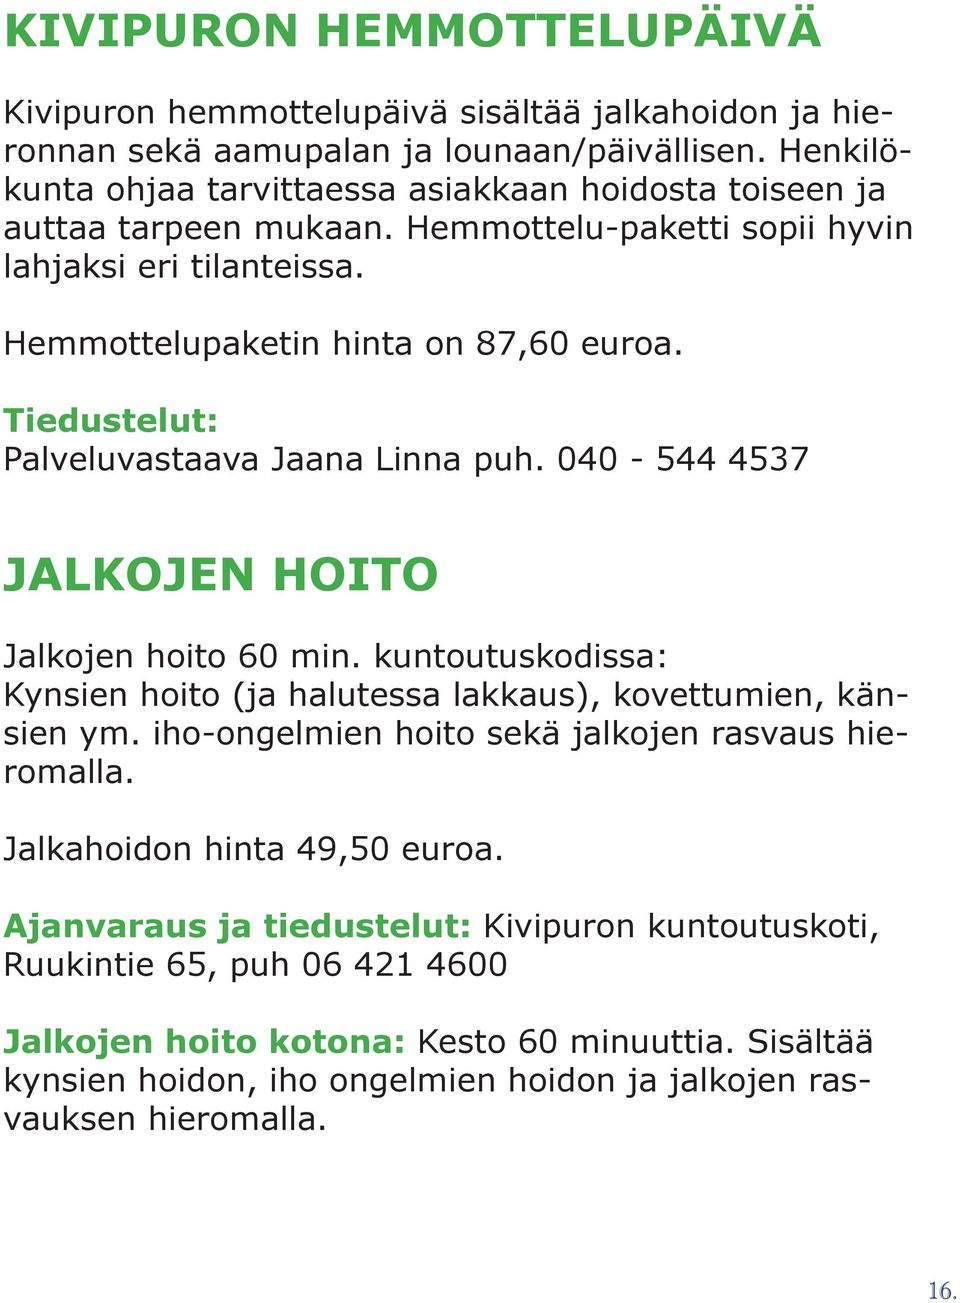 Tiedustelut: Palveluvastaava Jaana Linna puh. 040-544 4537 JALKOJEN HOITO Jalkojen hoito 60 min. kuntoutuskodissa: Kynsien hoito (ja halutessa lakkaus), kovettumien, känsien ym.